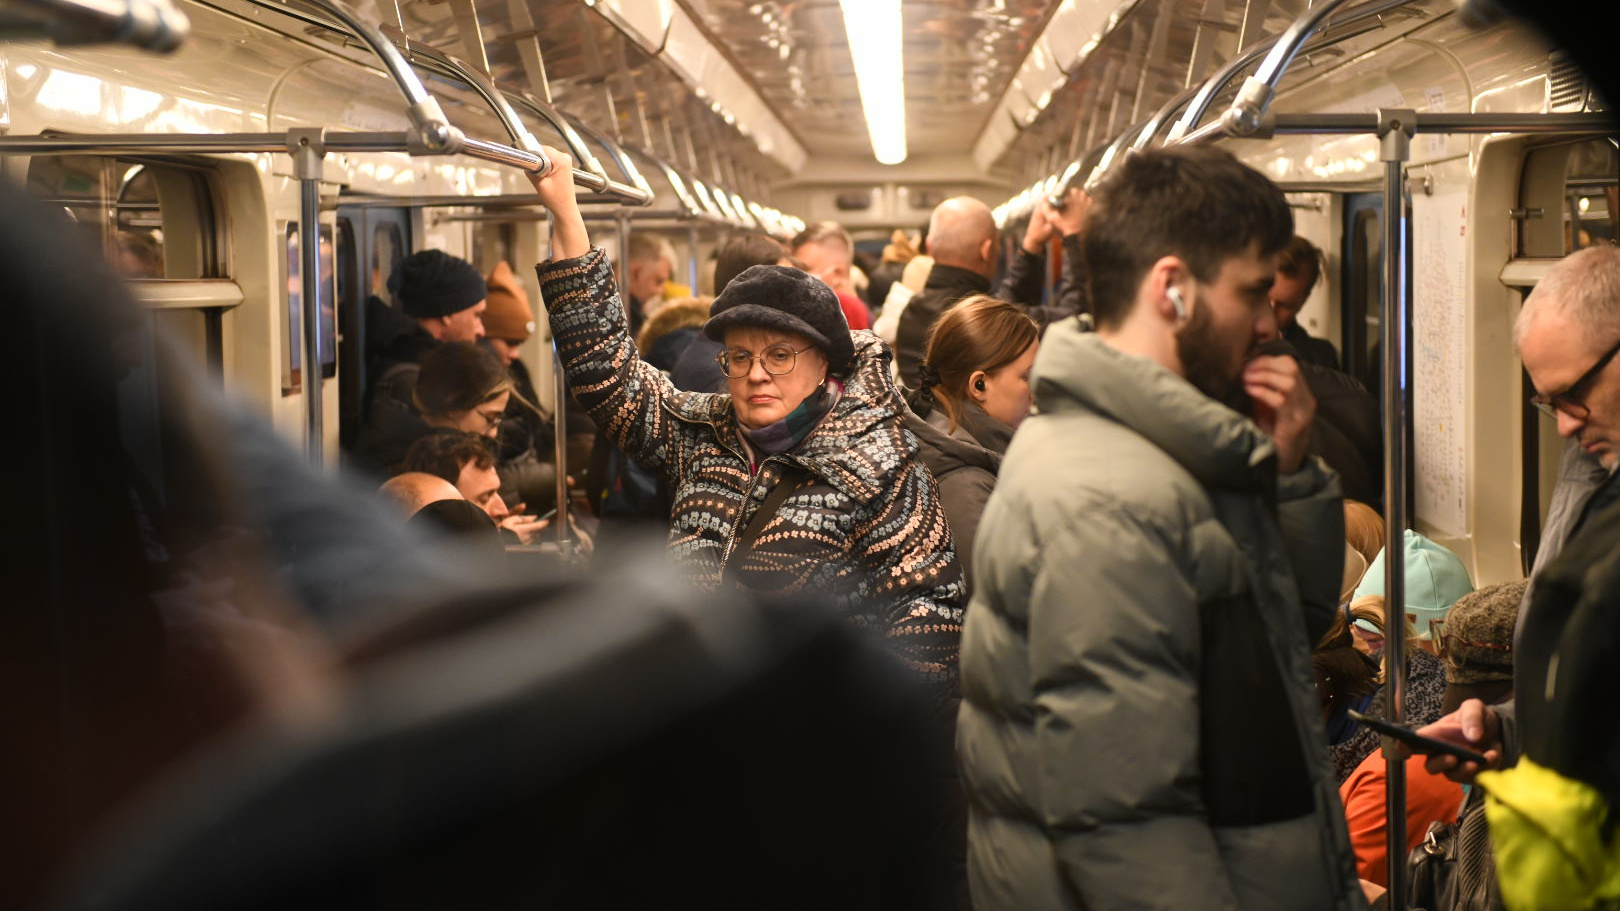 Линия последний день. Закрытие метро. Люди в метро Москвы. Зеленая ветка метро. Толпа людей в метро со спины.